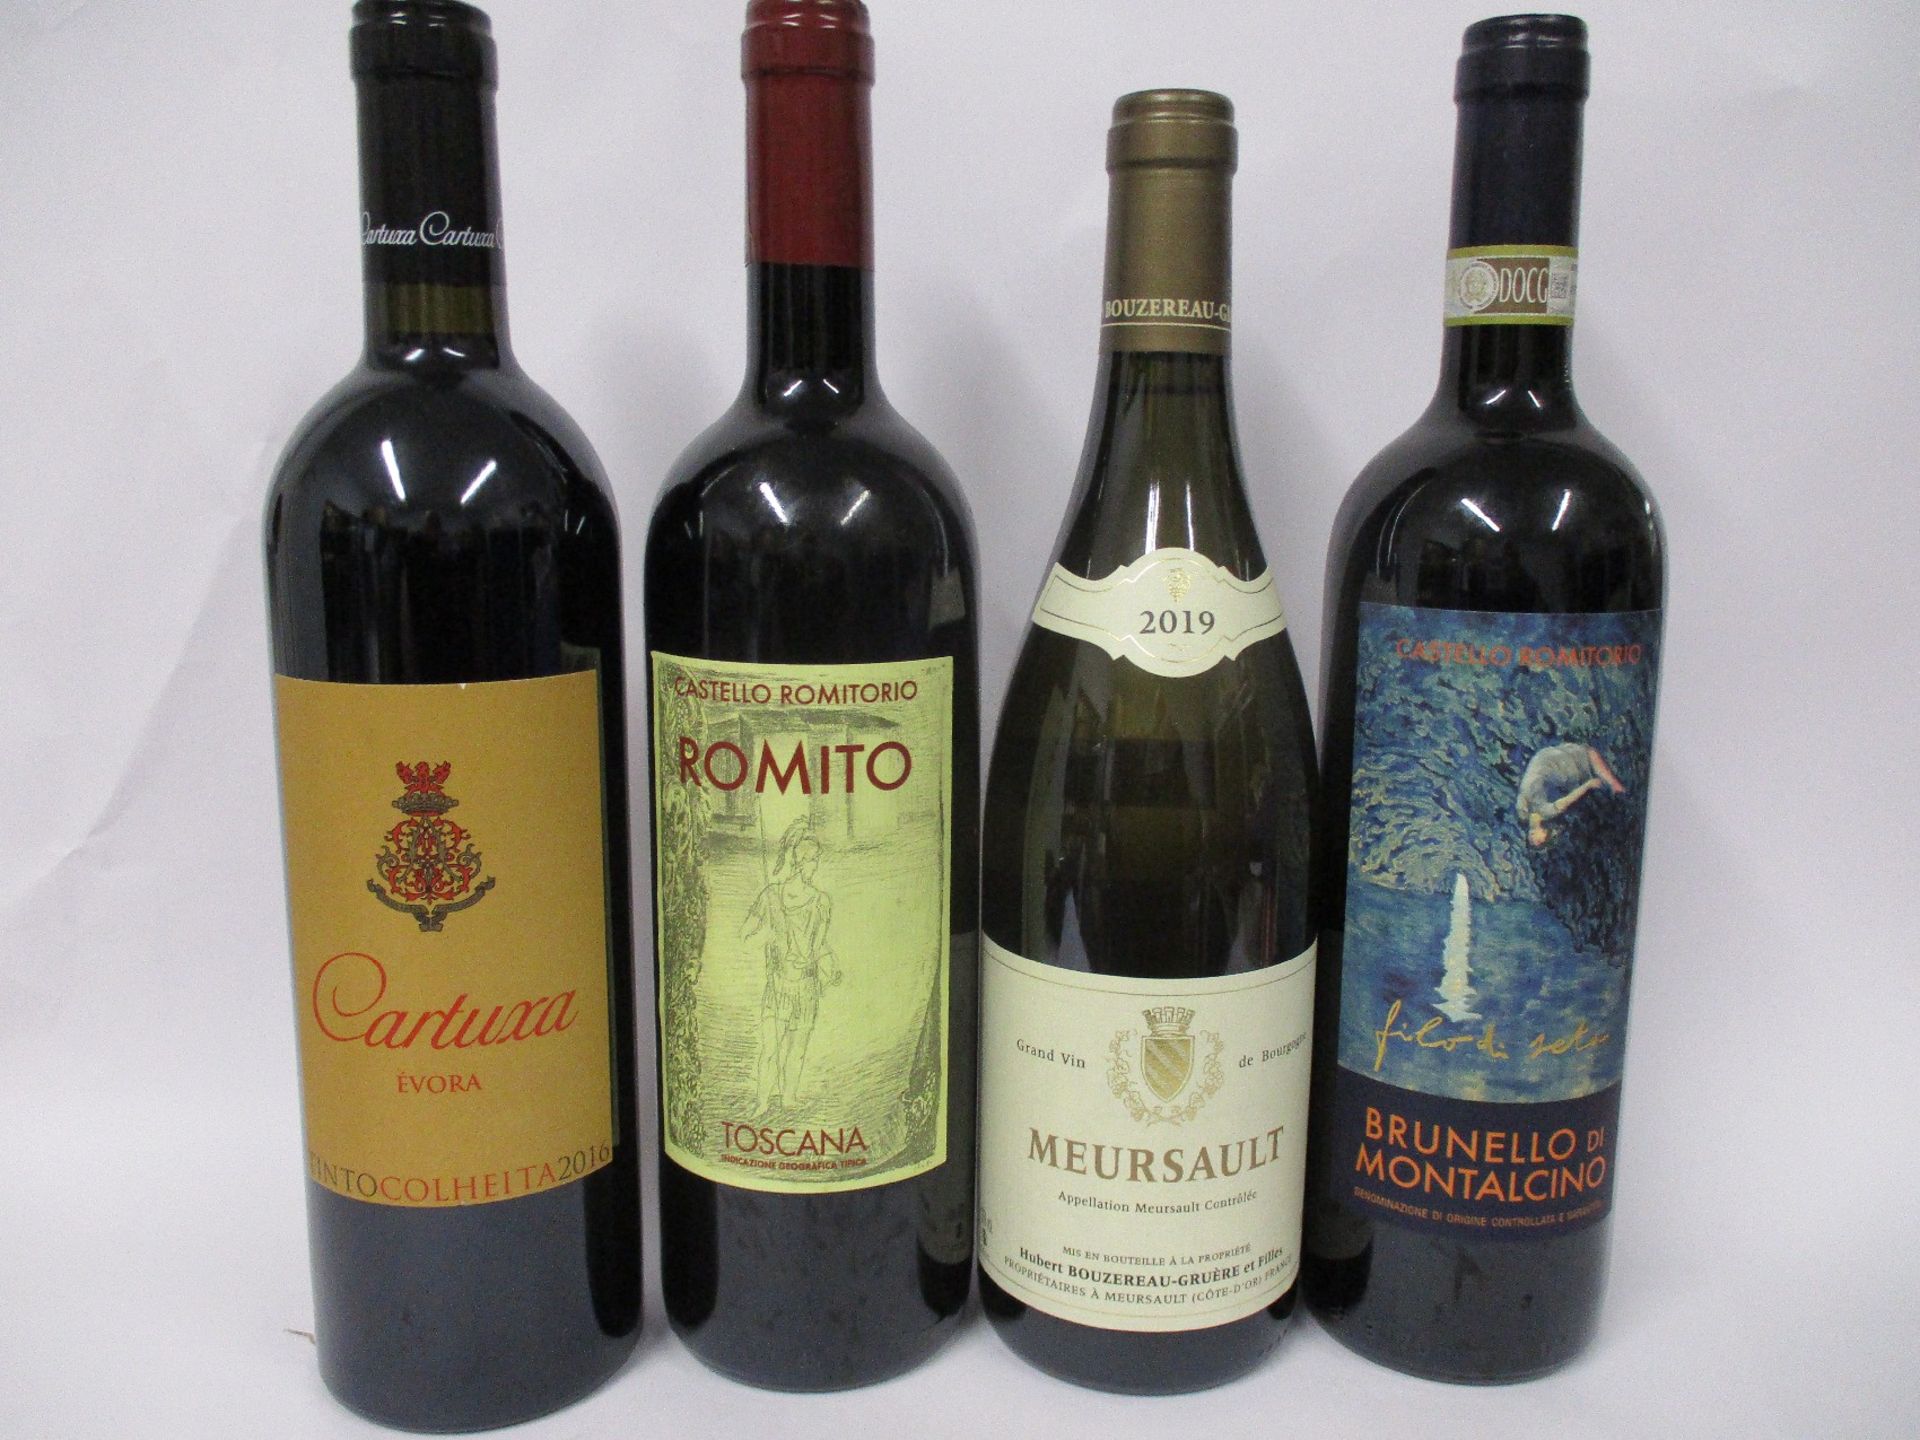 A bottle of Castello Romitorio filo di seta brundello di montalcino 2015 (750ml), a Cartuxa Evora